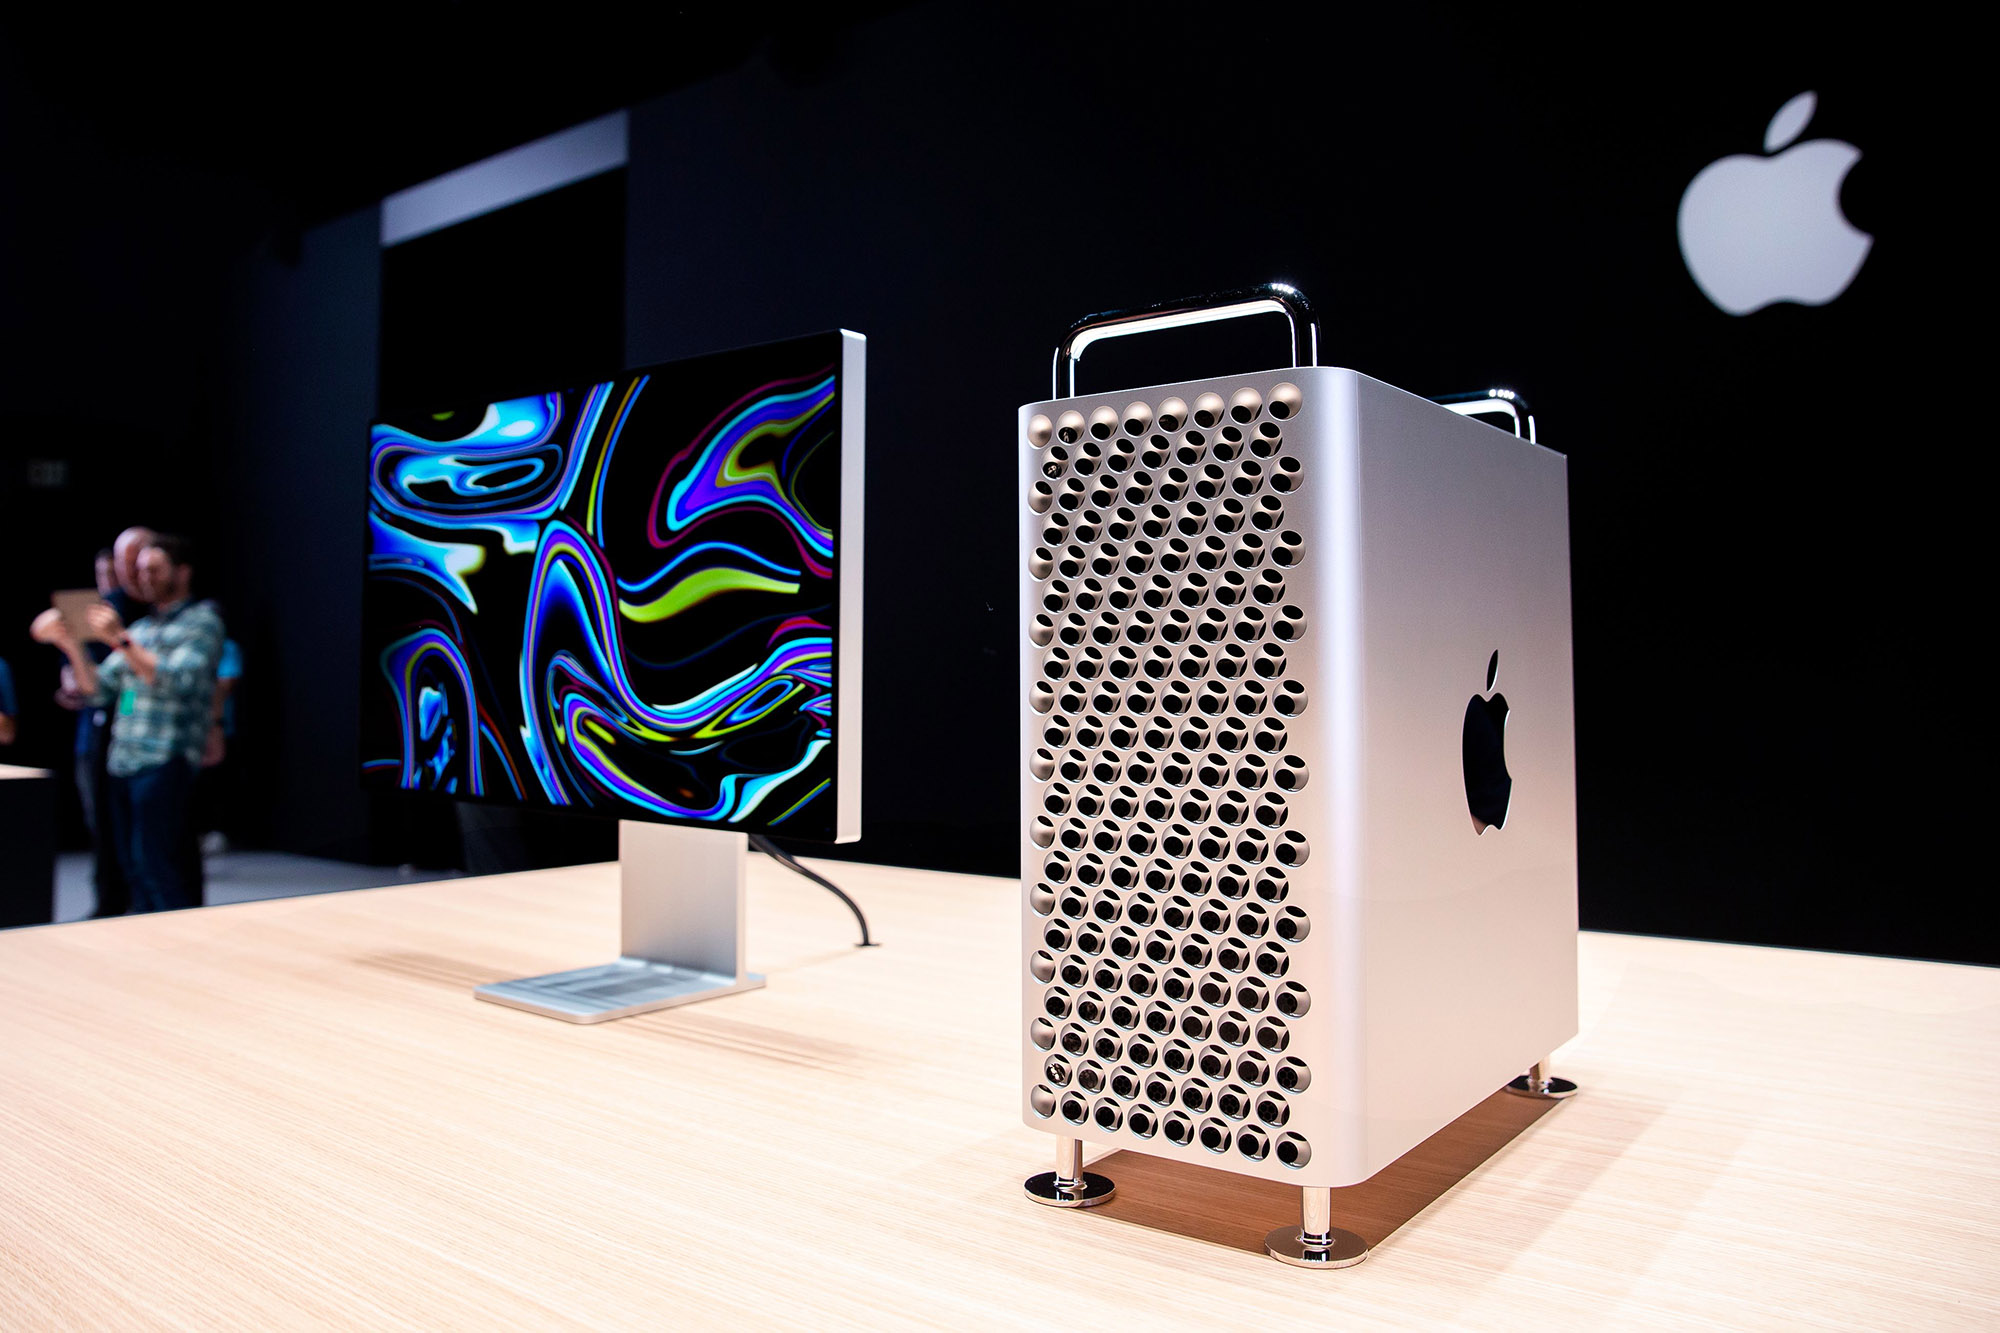 El nuevo Mac Pro de Apple se exhibe en la sala de exposición durante la Conferencia mundial de desarrolladores (WWDC) de Apple.